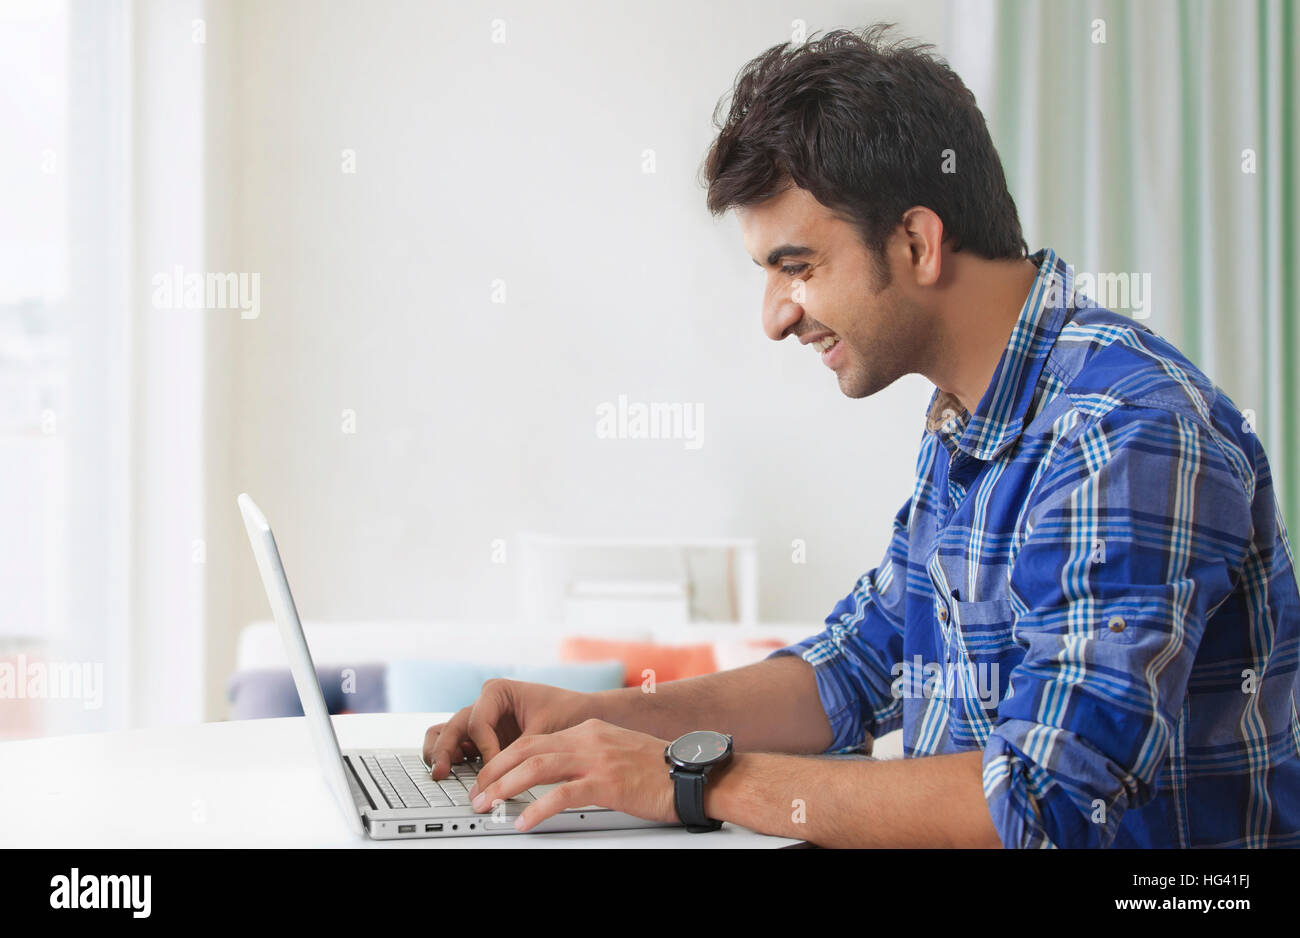 Smiling man using laptop computer Stock Photo